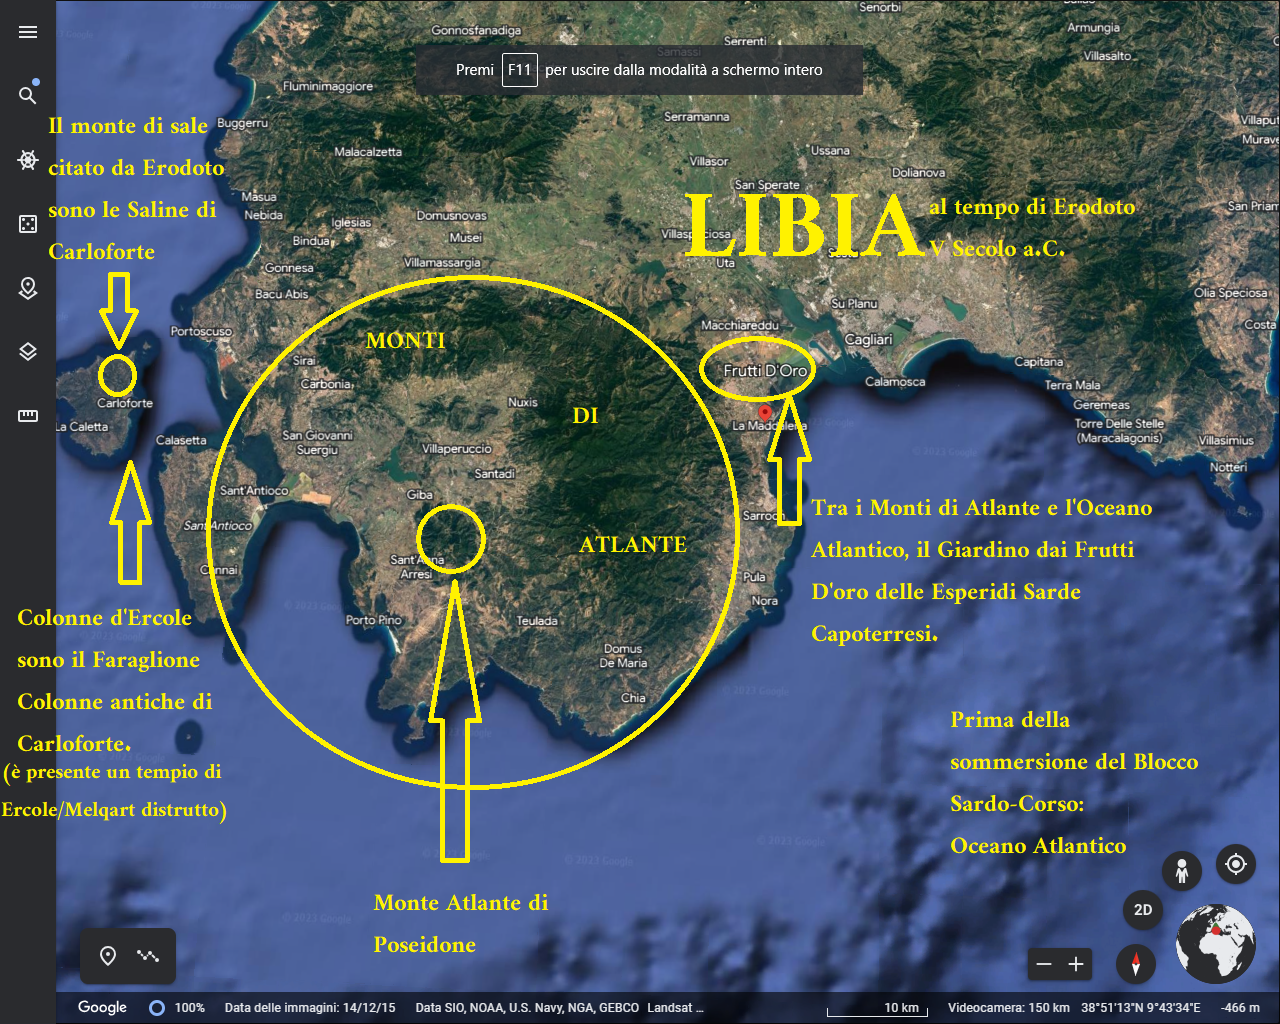 Hasta ahora la cartografía de Herodothean Libia se ha equivocado: Libia es la provincia de Cagliari